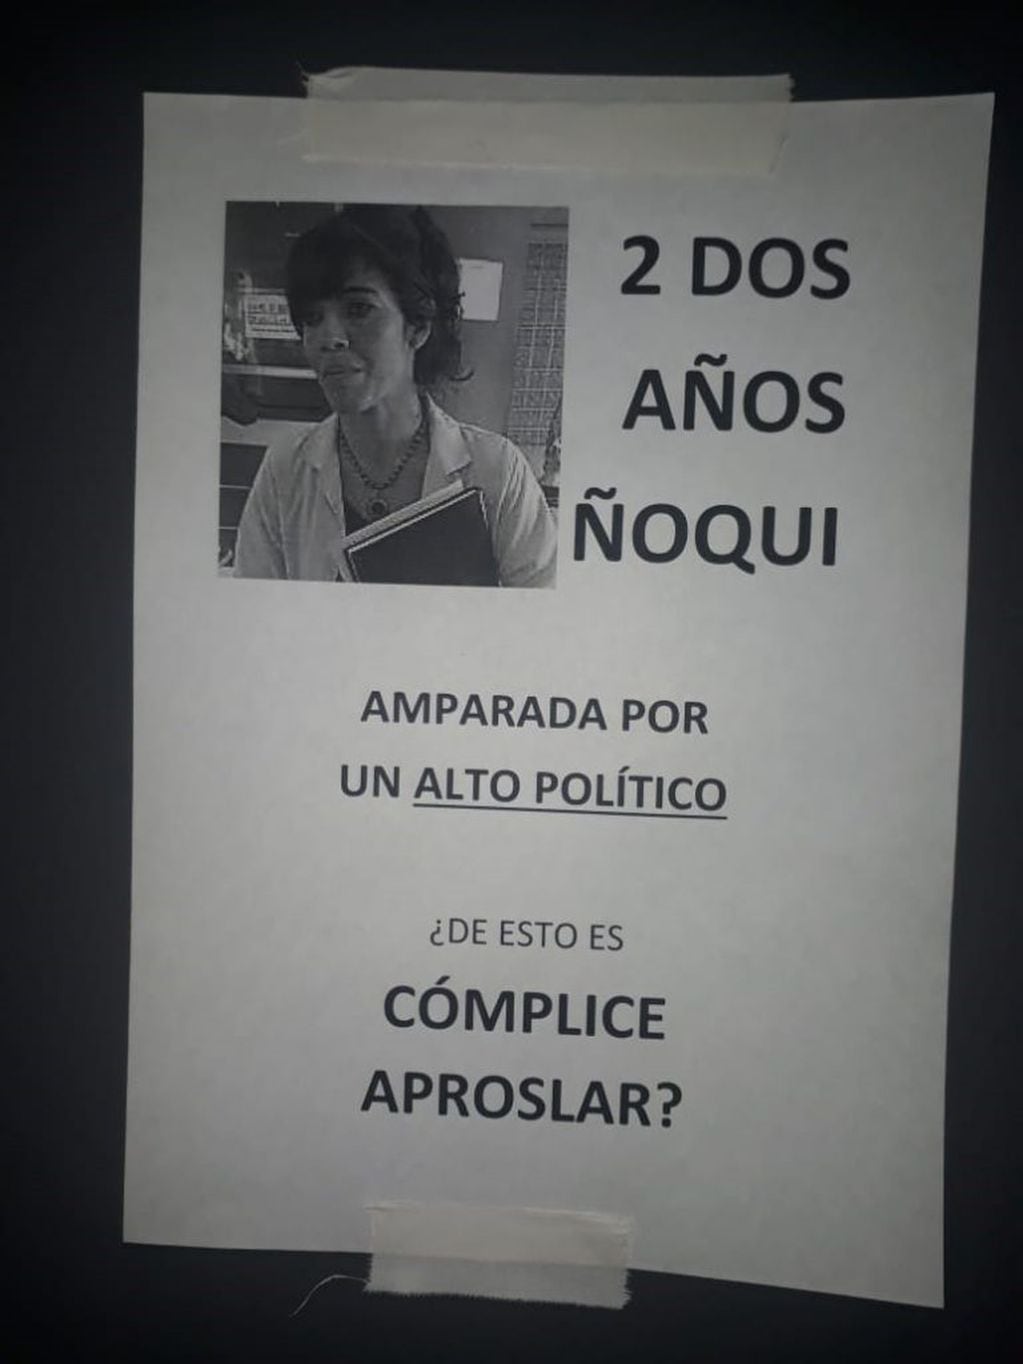 La semana pasada aparecieron afiches en contra de la doctora Karina Viñas